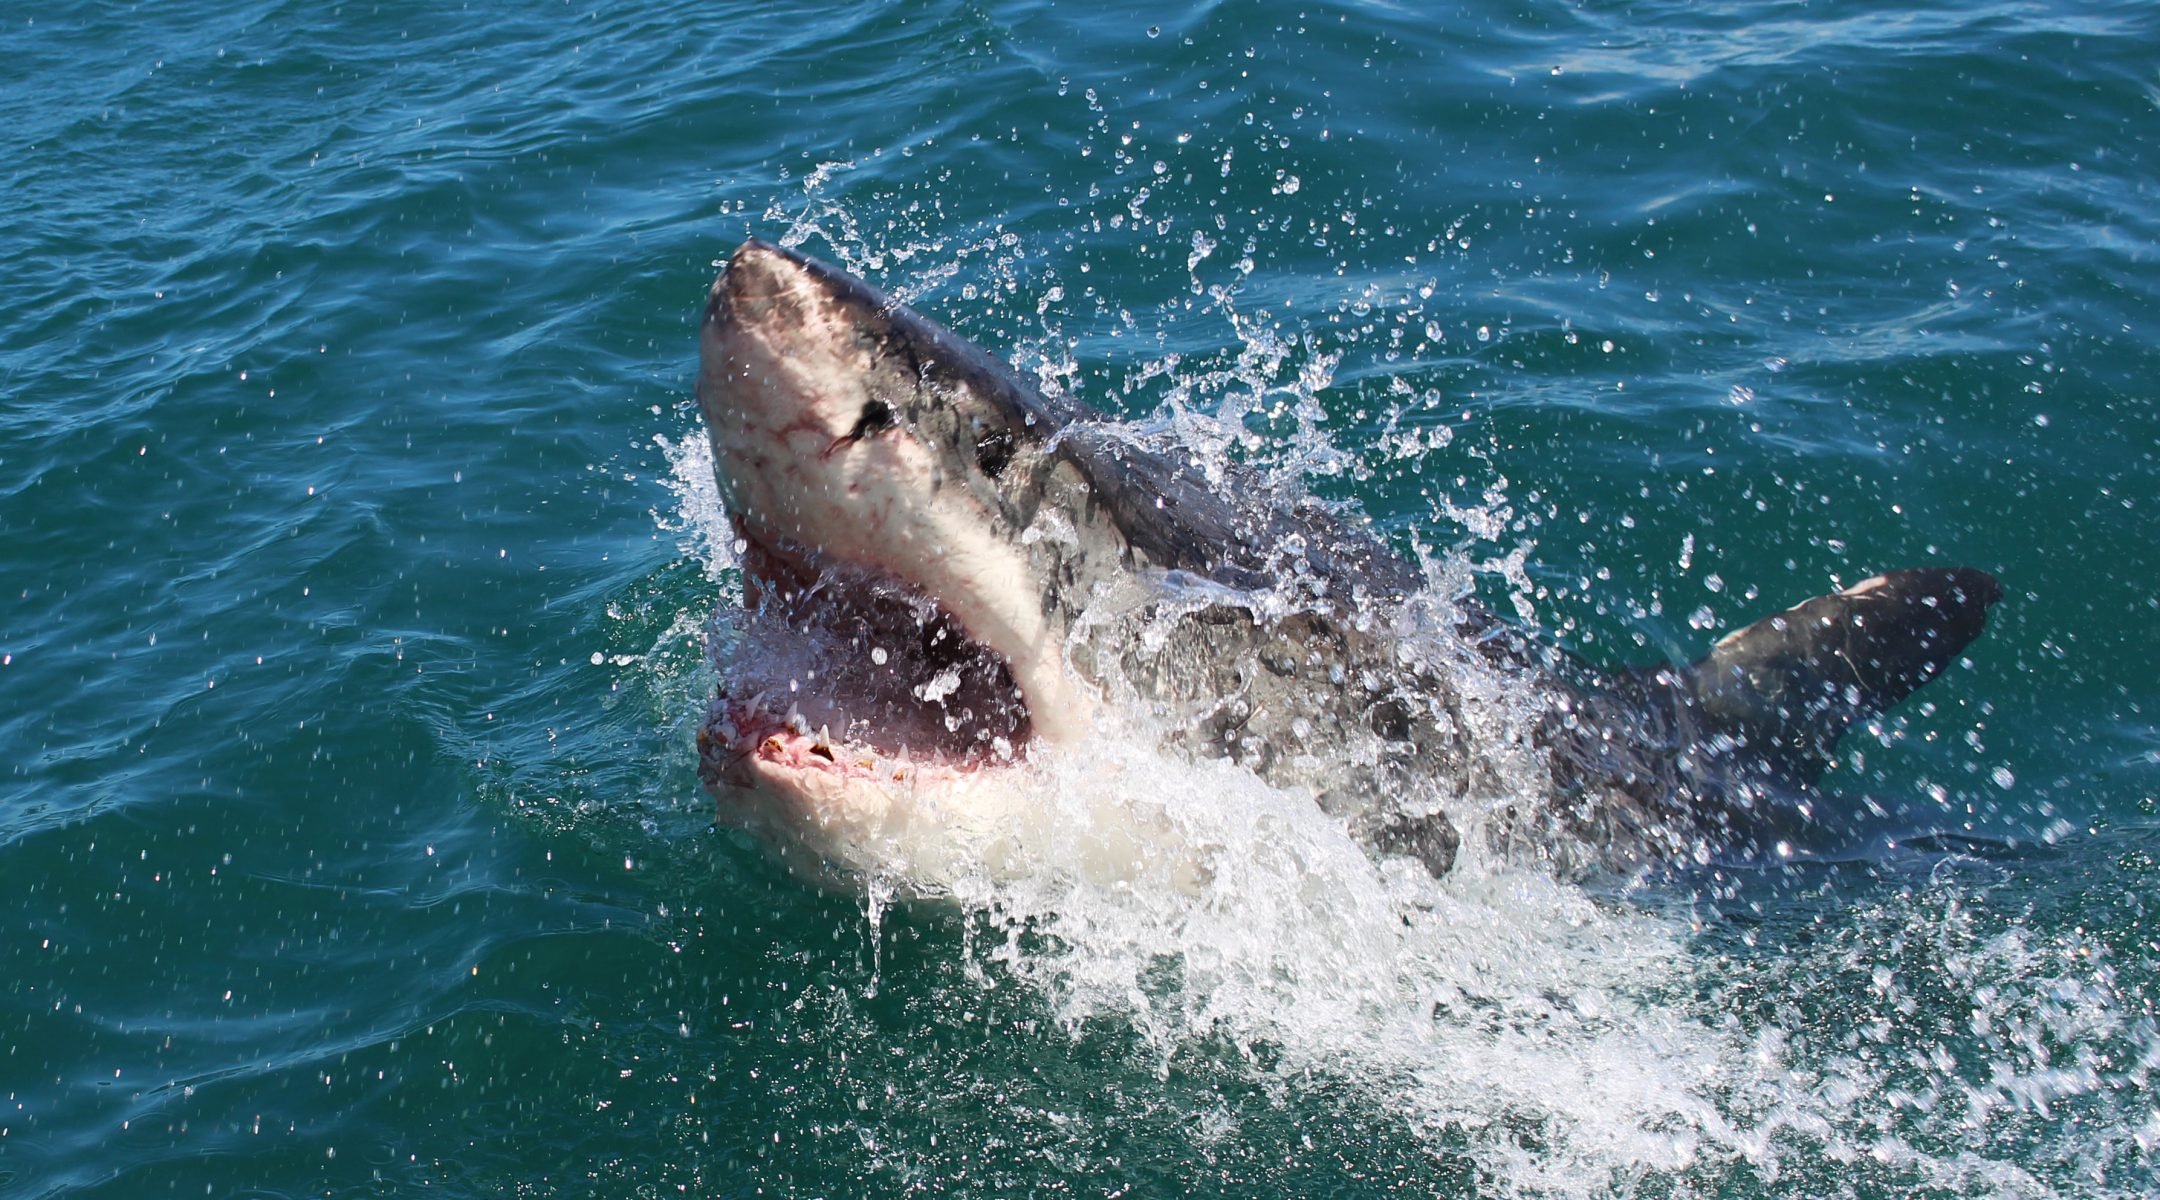 Тупорылая акула